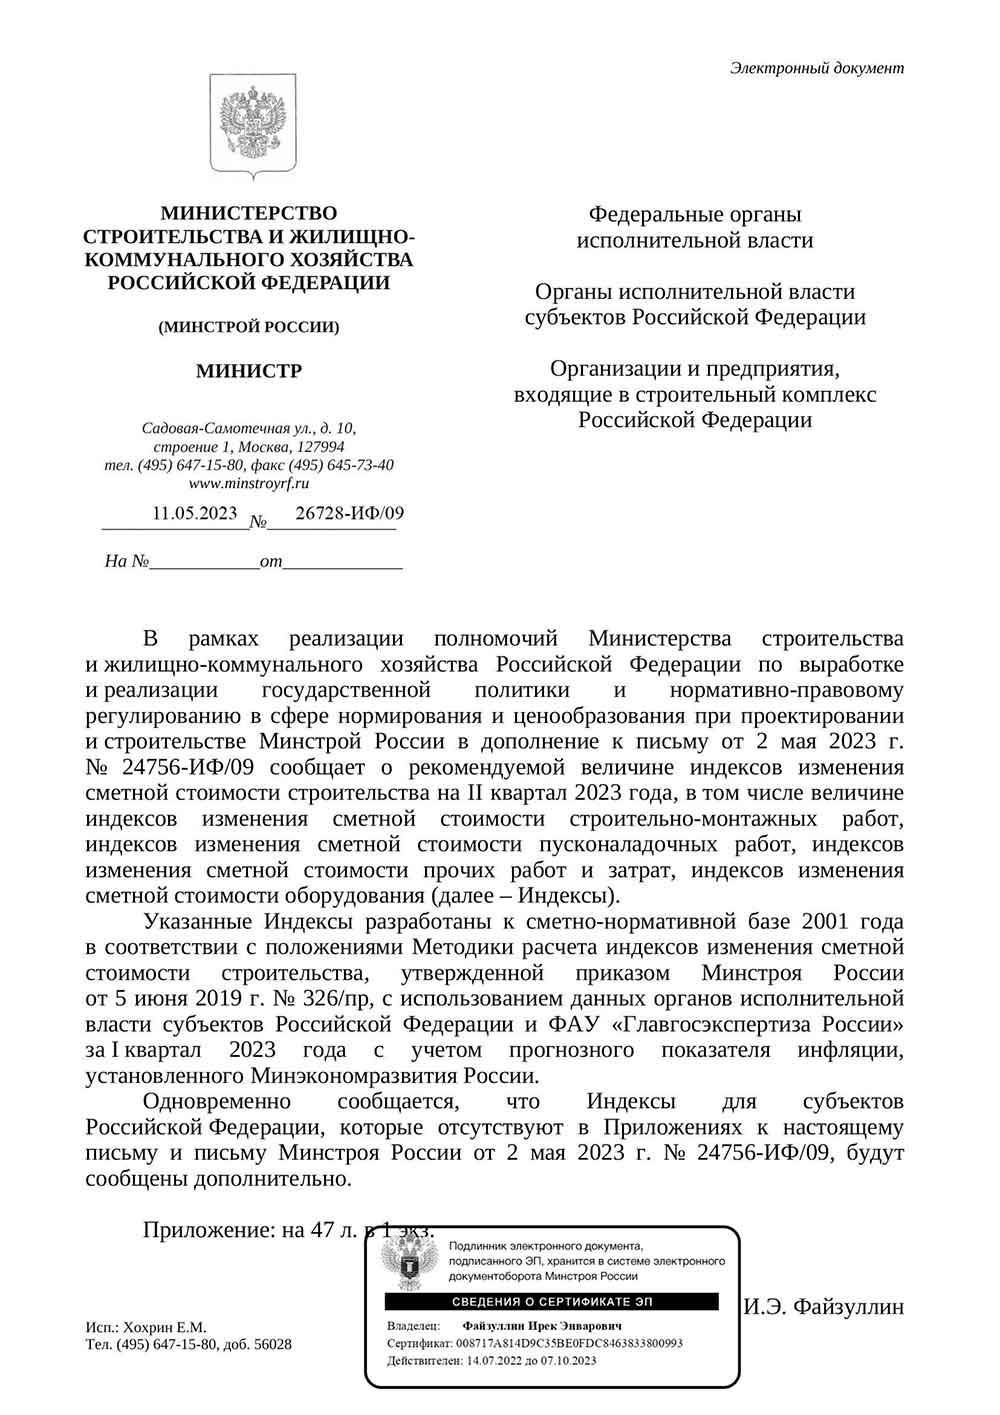 Письмо Минстроя РФ №29735-АЛ/09 от 23.05.2023 г.